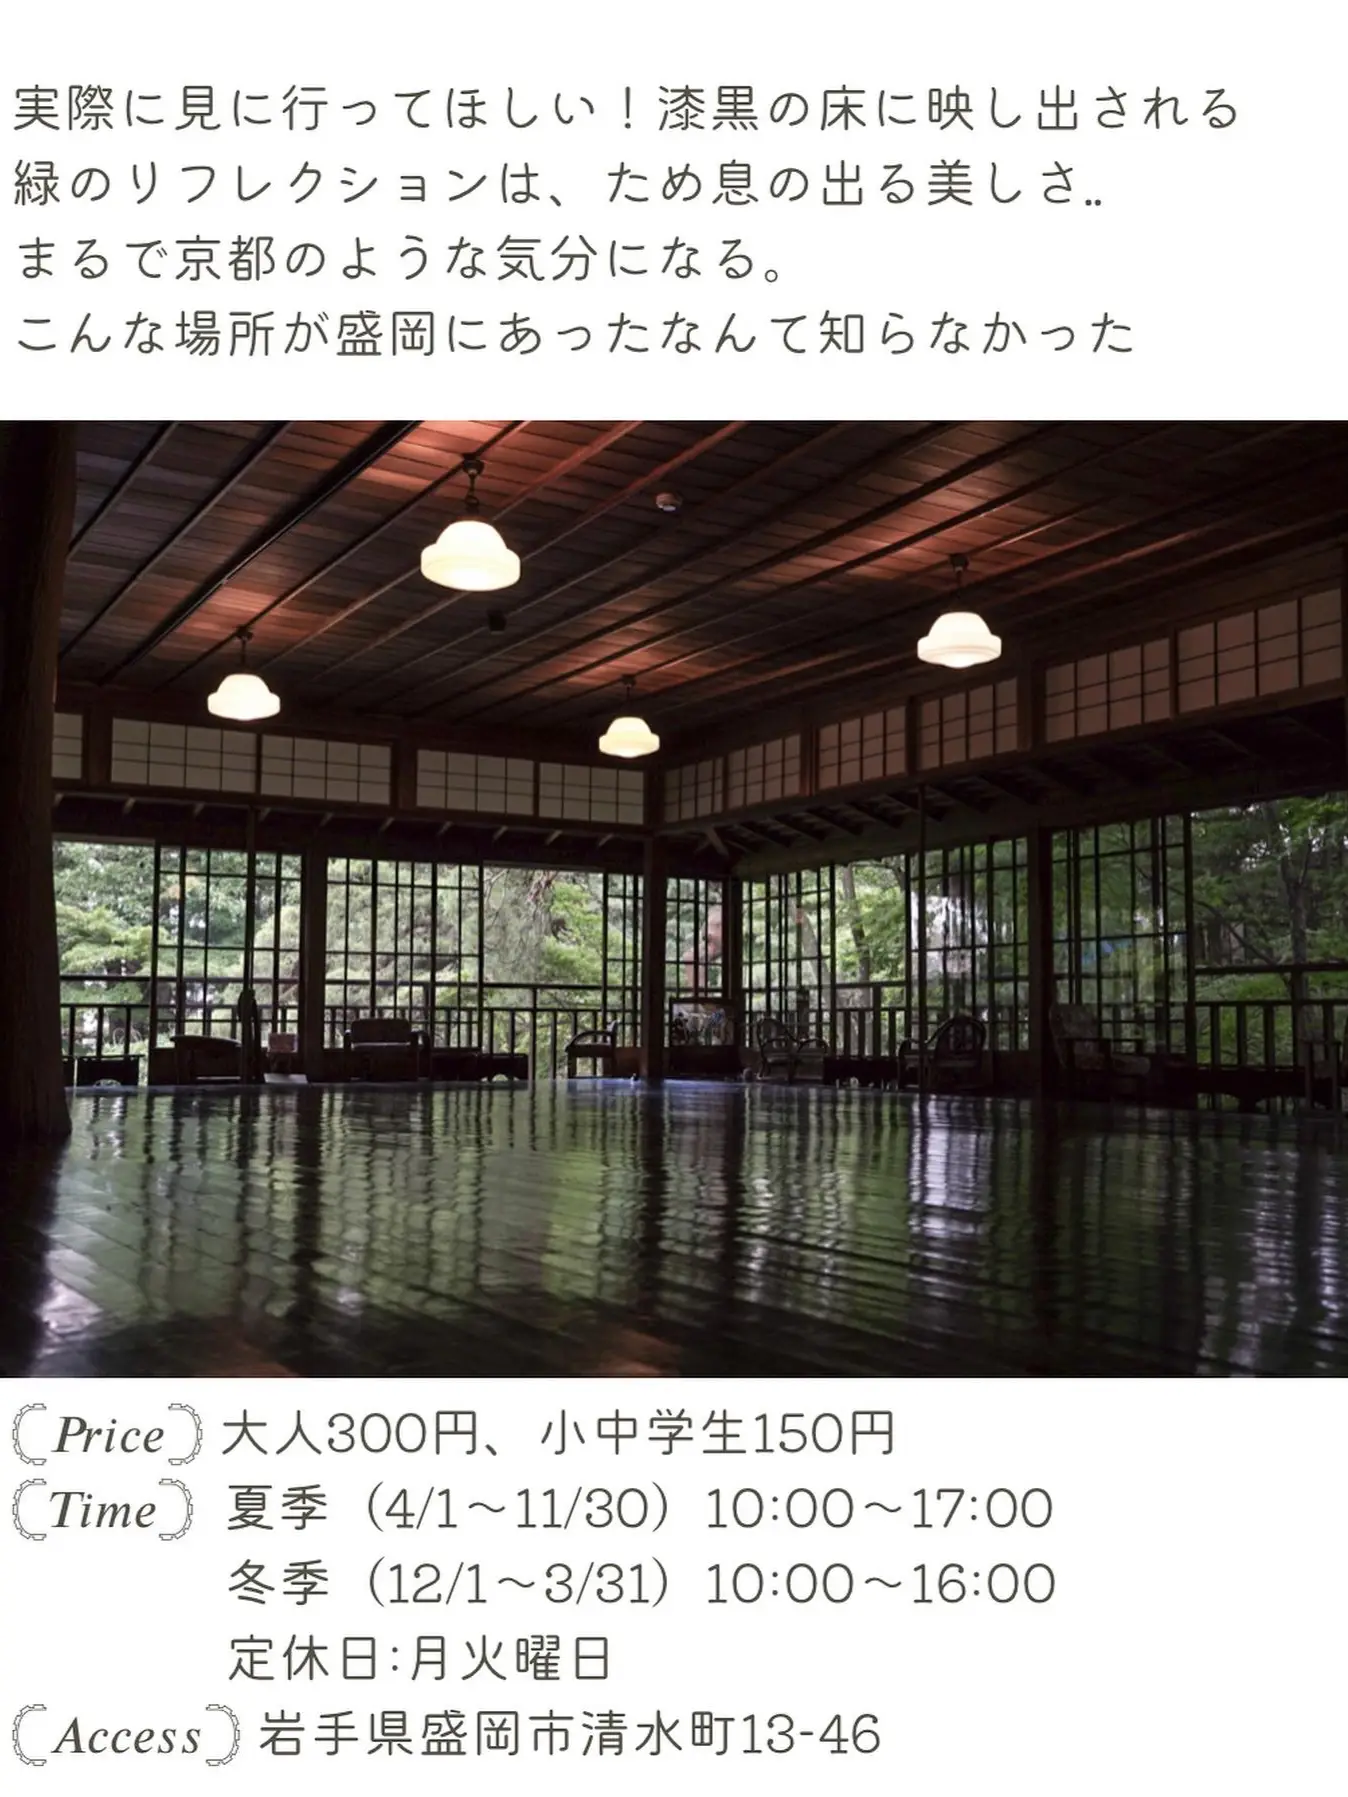 岩手 盛岡 行かなきゃ損 まるで京都な盛岡の緑あふれる庭園 あず 食旅きろく𓂃𓈒 が投稿したフォトブック Lemon8